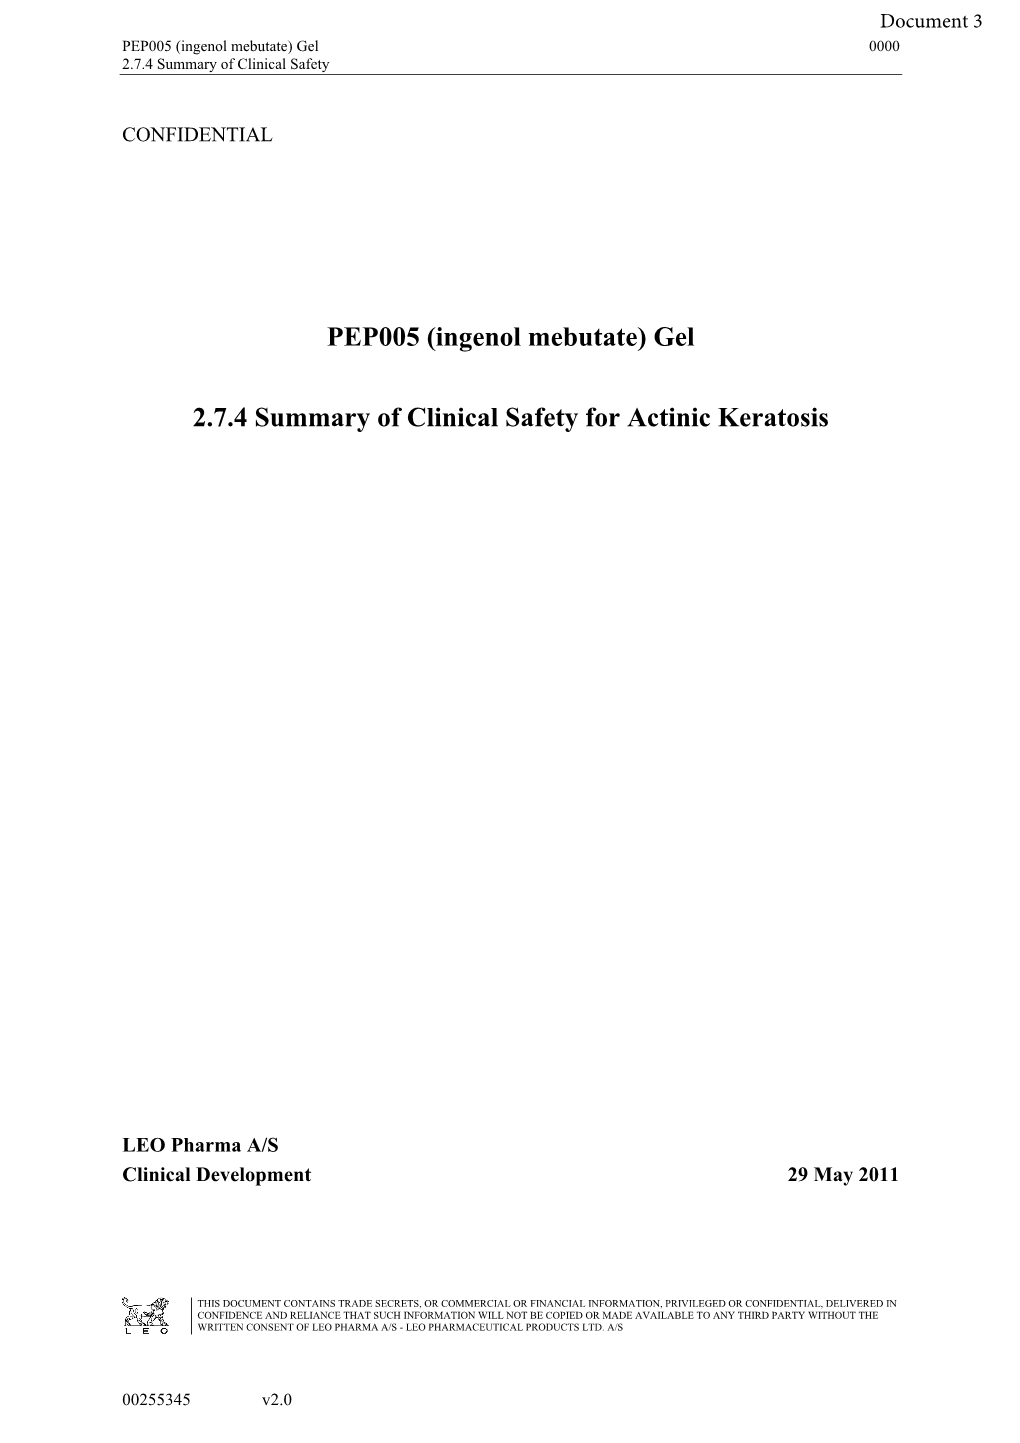 FOI 073-1718 Document 3